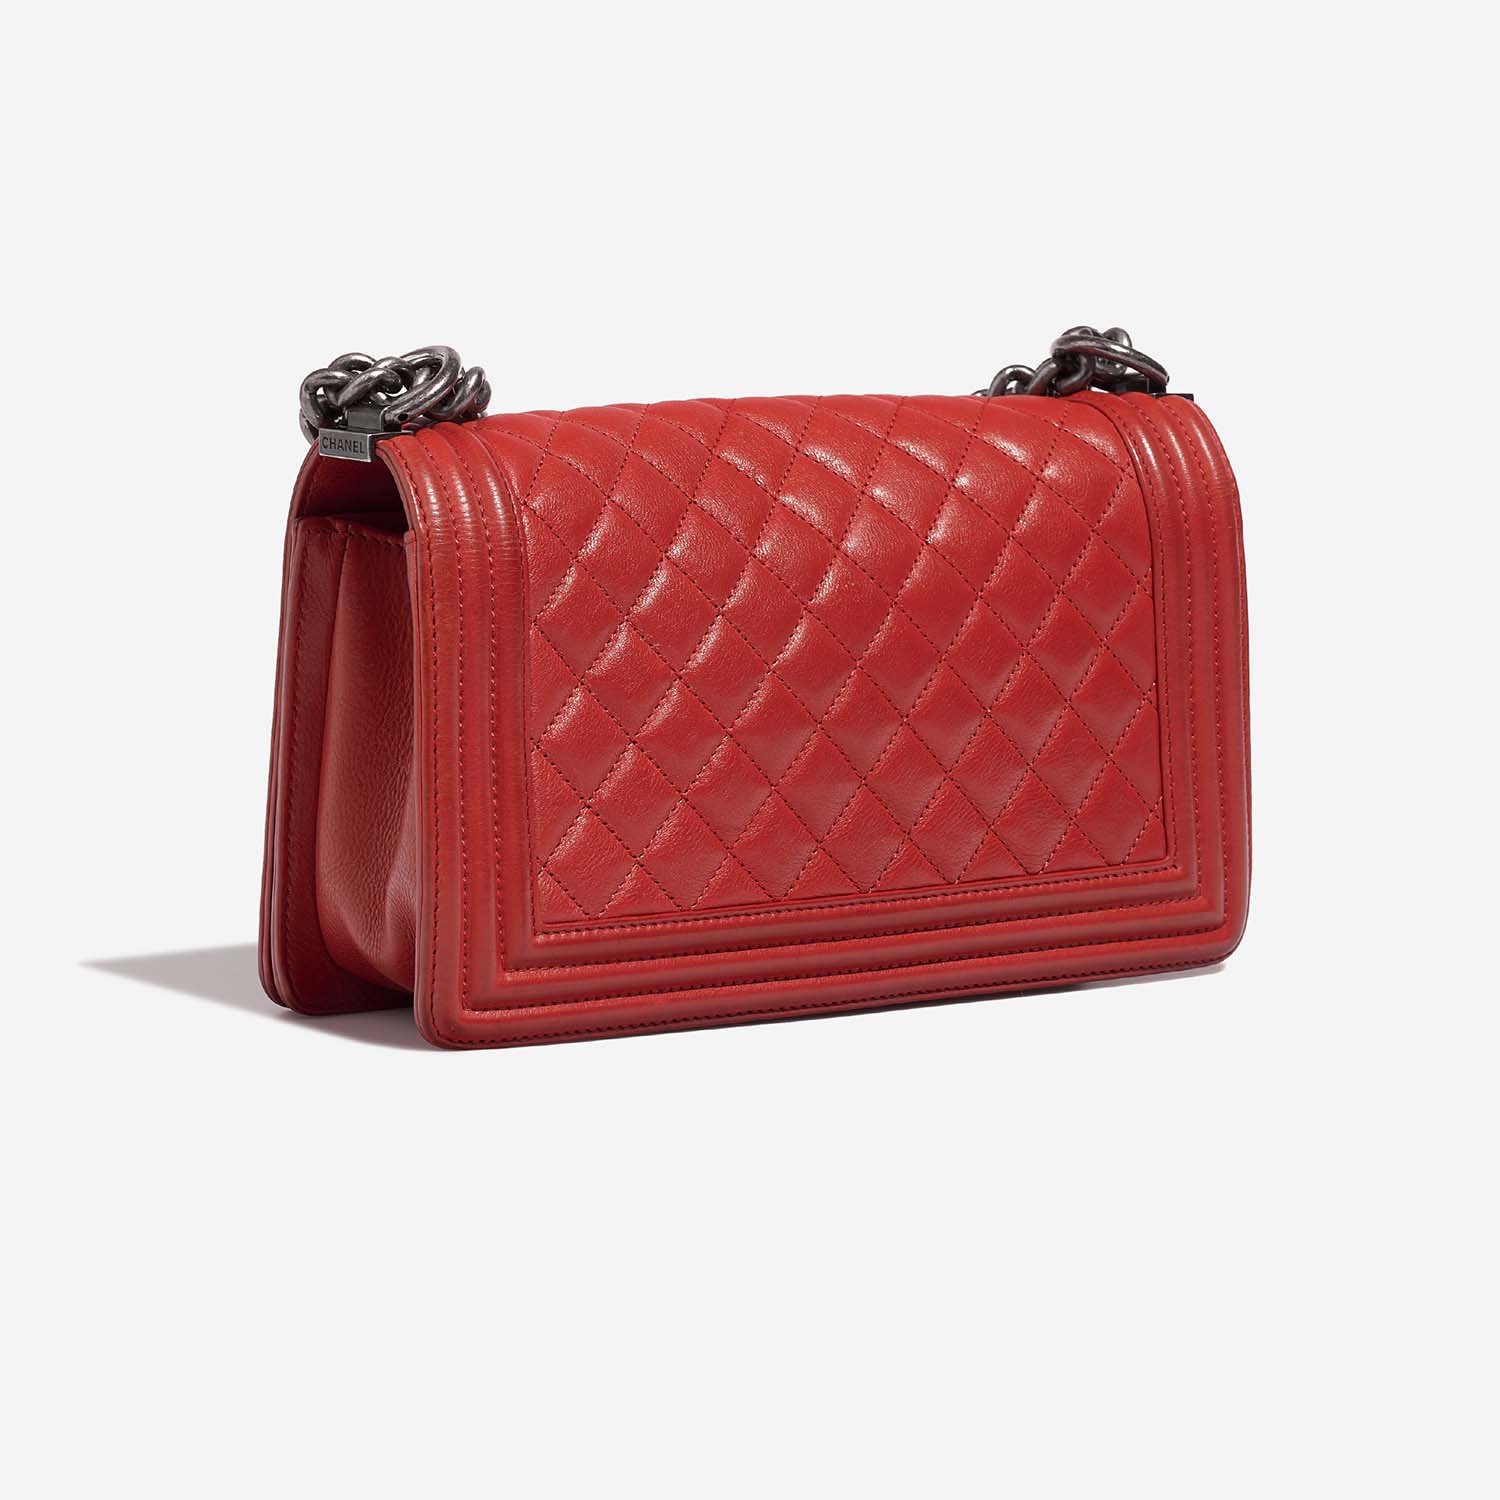 Chanel Boy OldMedium Red 7SB S | Verkaufen Sie Ihre Designer-Tasche auf Saclab.com